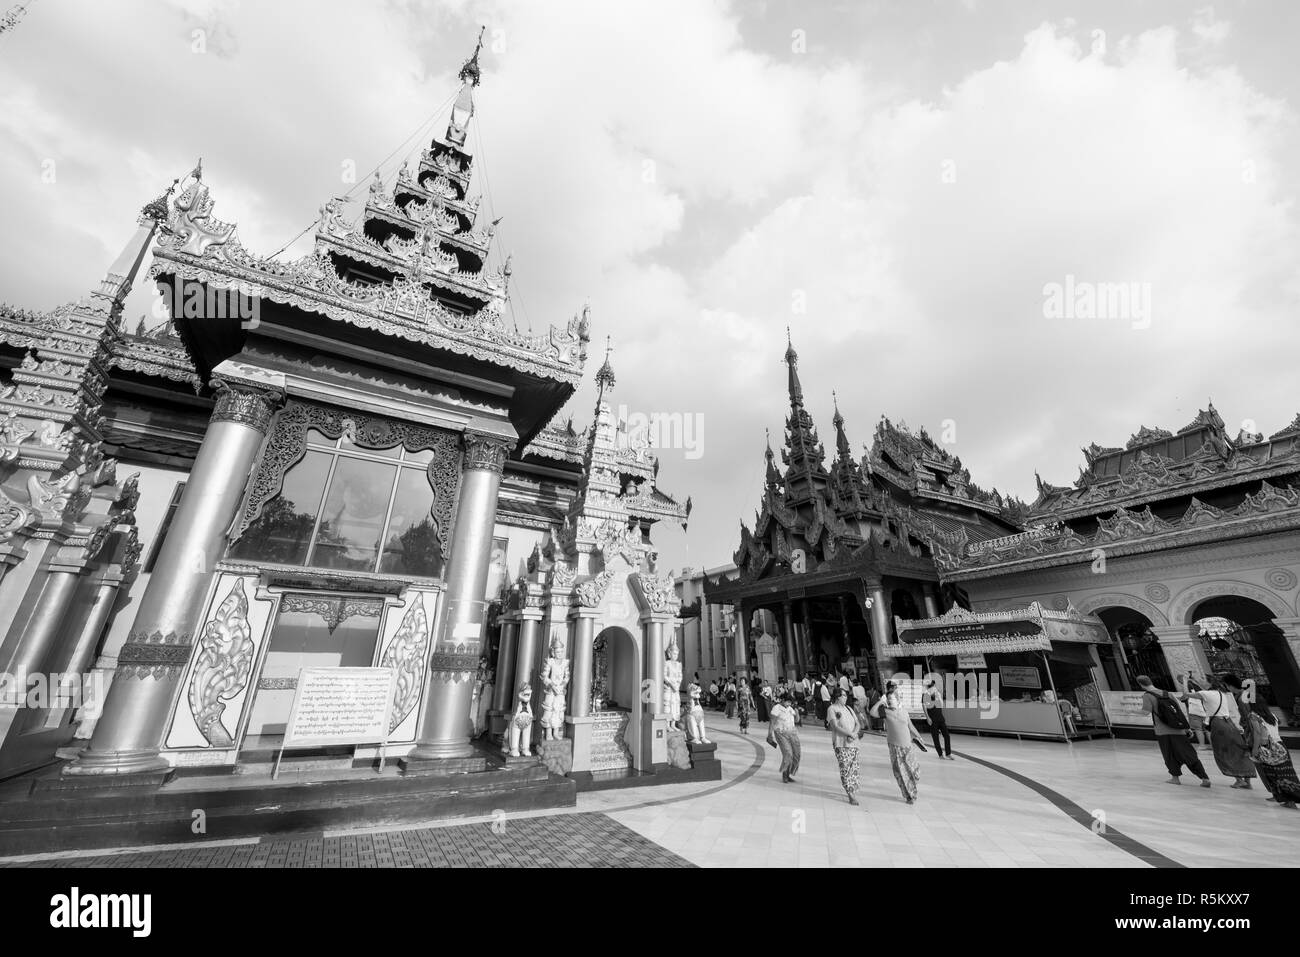 YANGON, MYANMAR - 16 novembre, 2018 : Noir et blanc photo de la pagode Shwedagon, un des plus important de Yangon, Myanmar Banque D'Images